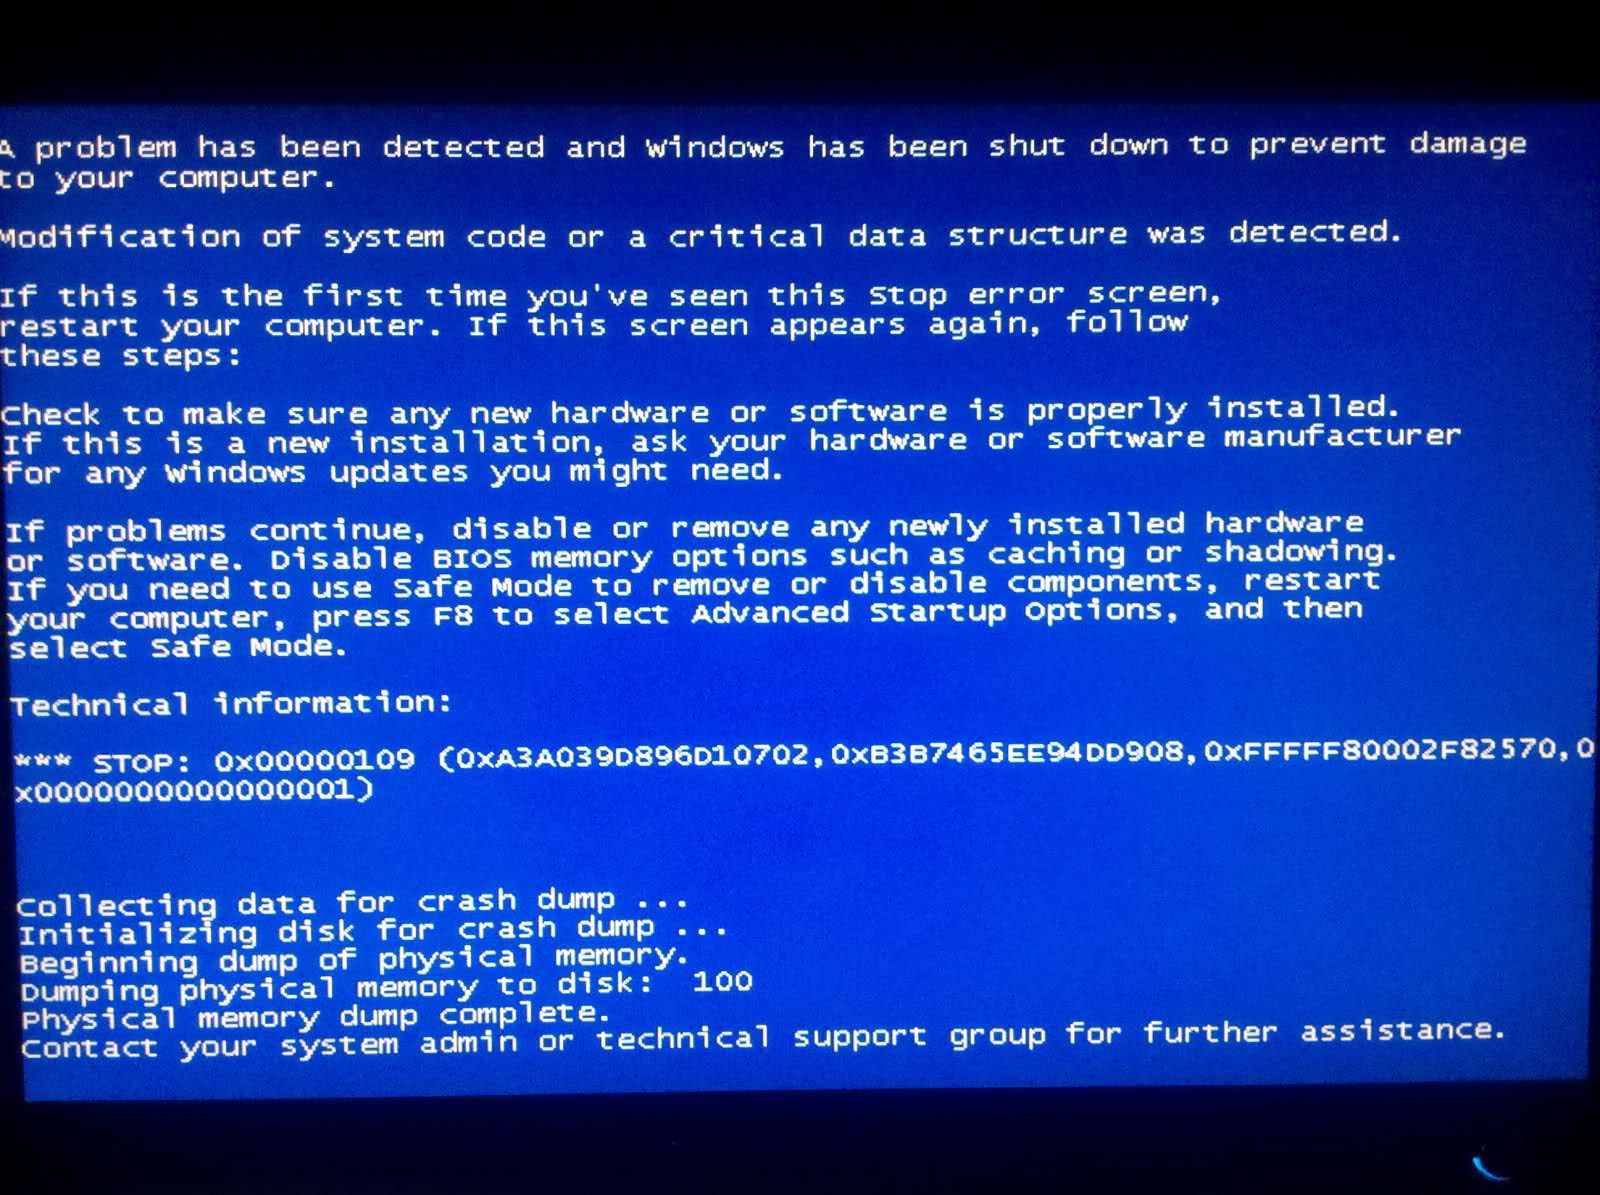 חלק ממשתמשי Windows דיווחו על שגיאה זו, שמופיעה בדרך כלל על המסך במהלך אתחול המערכת: